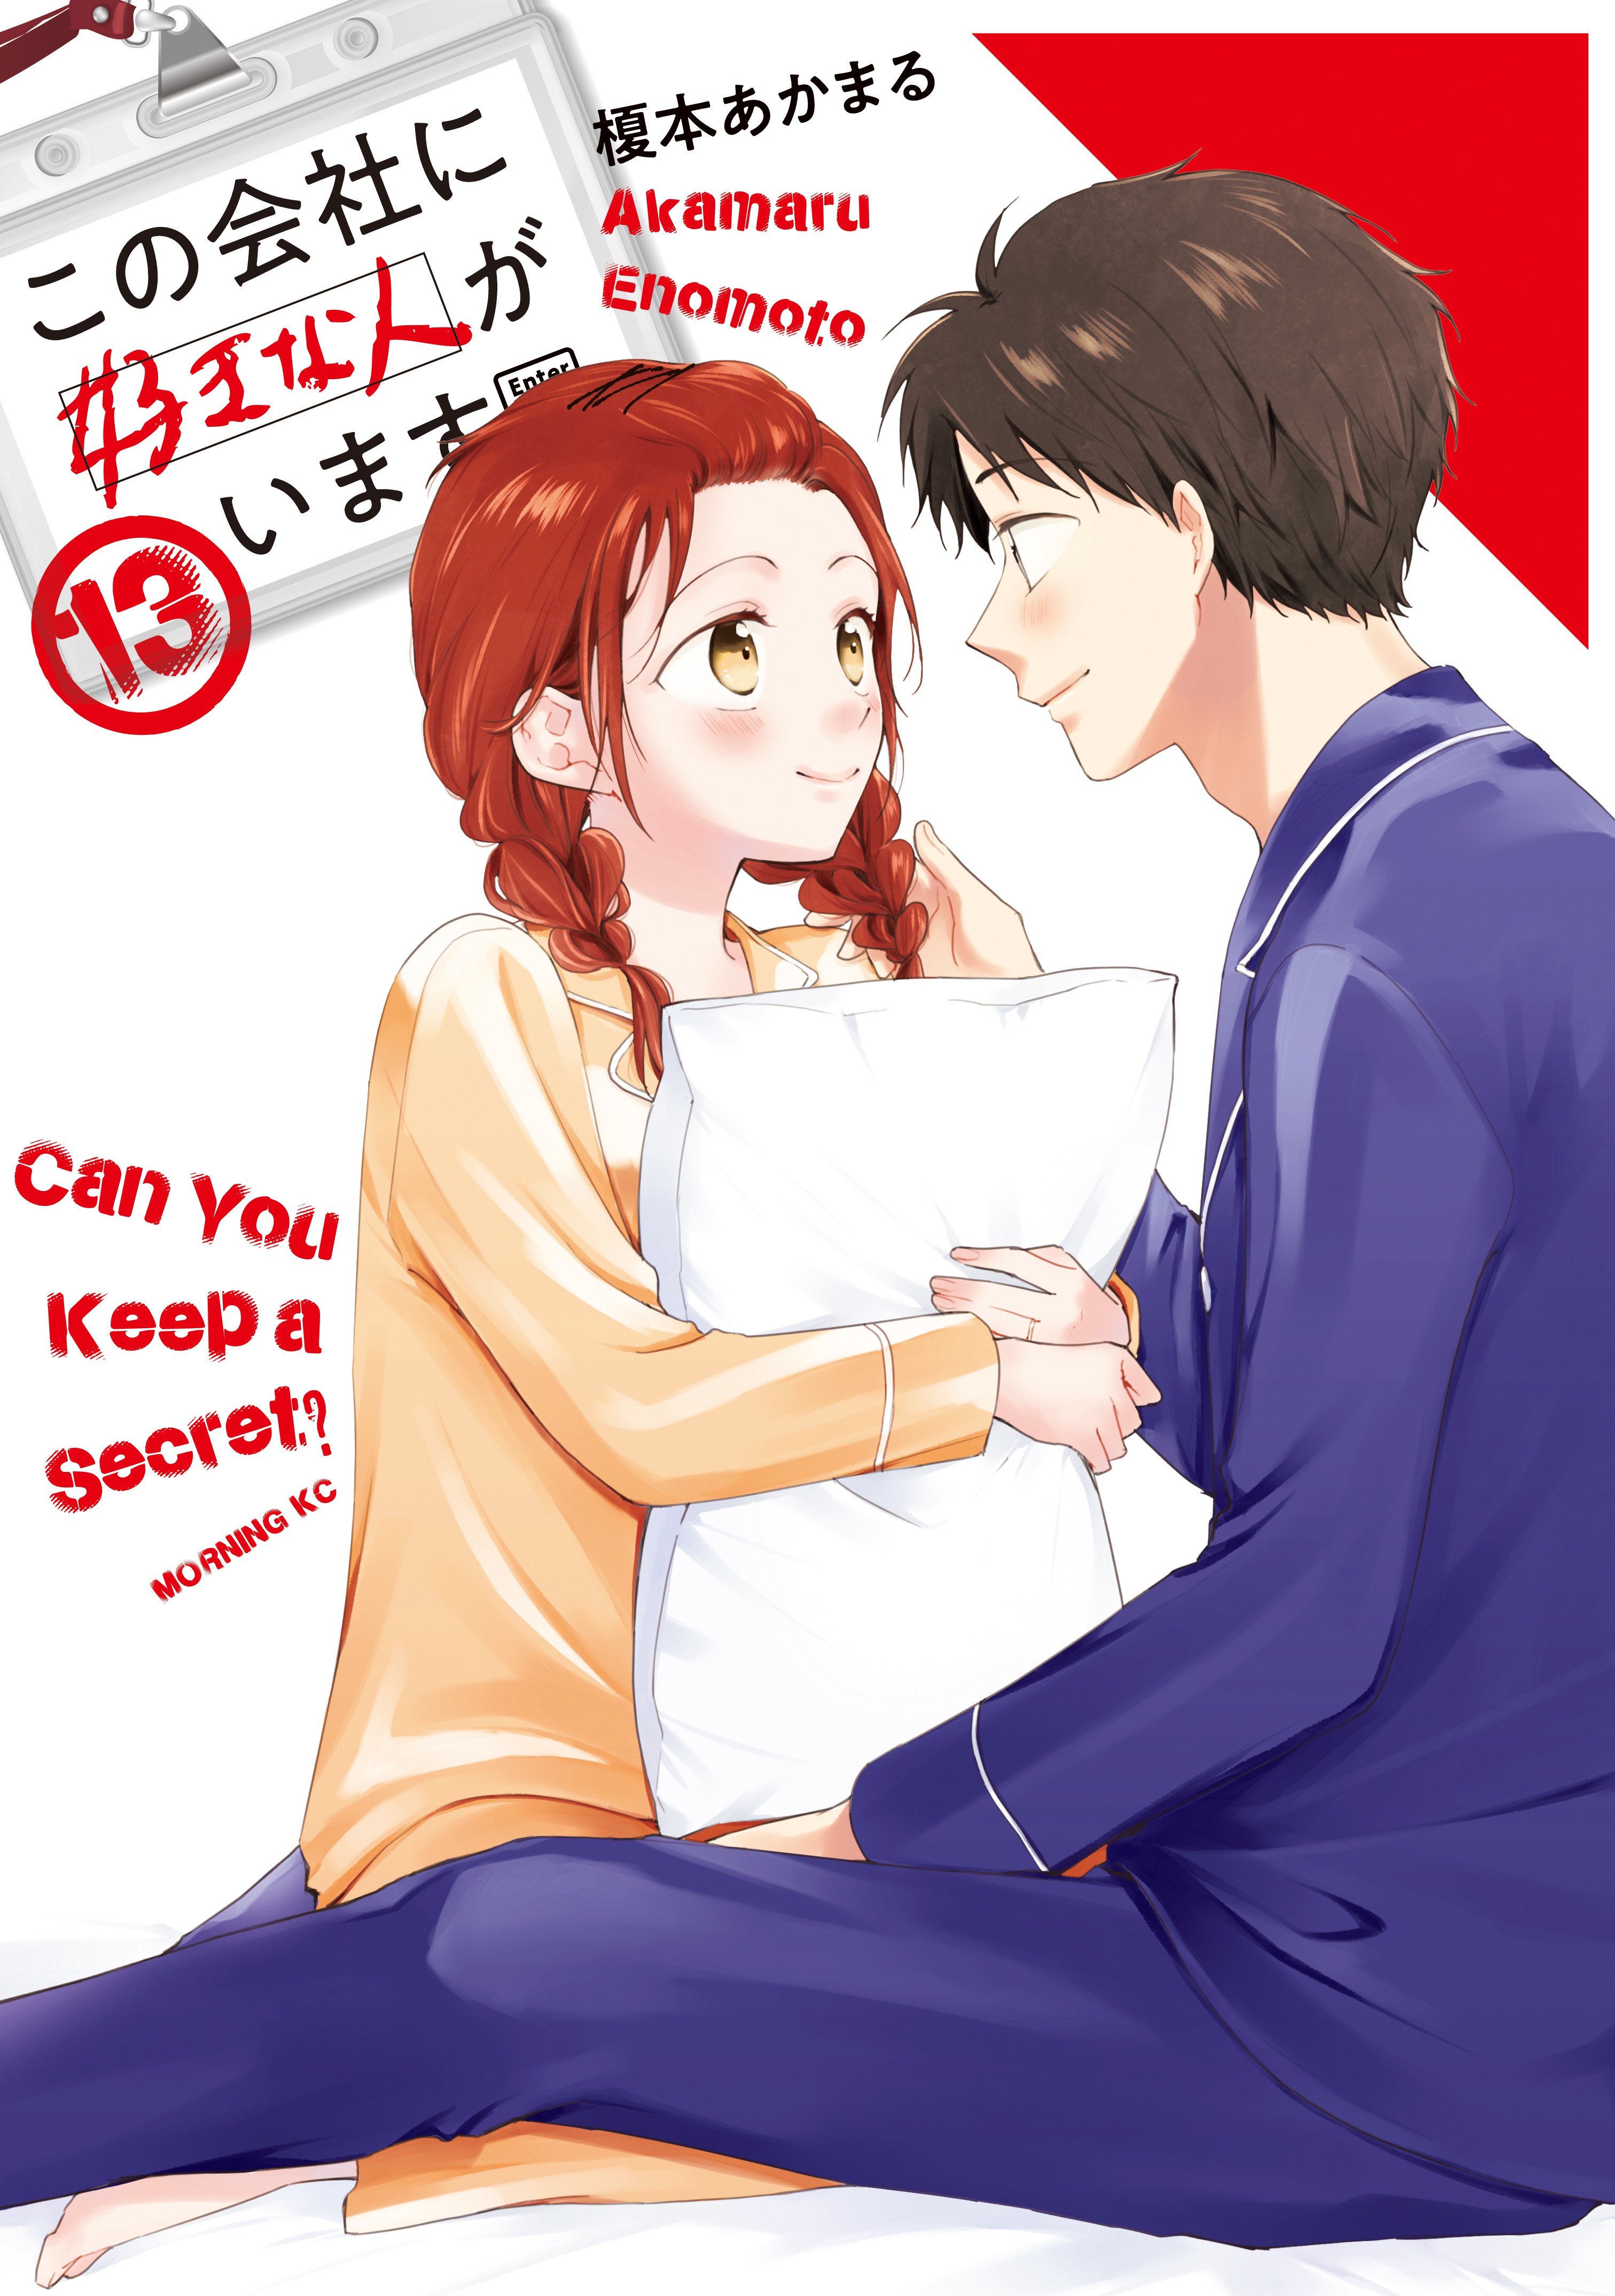 Can you keep a secret manga